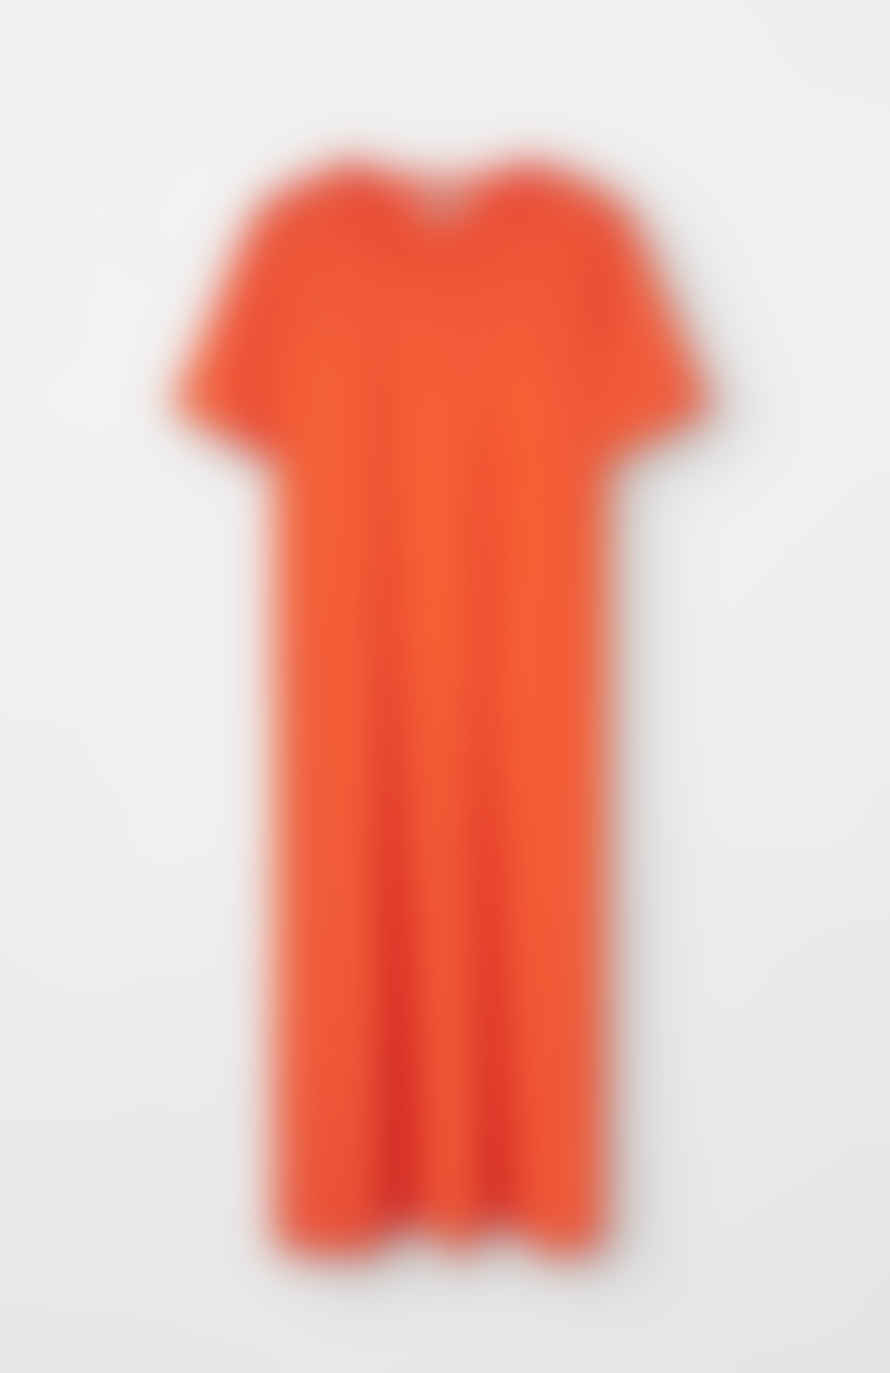 Loreak Mendian Robe Doris Orange